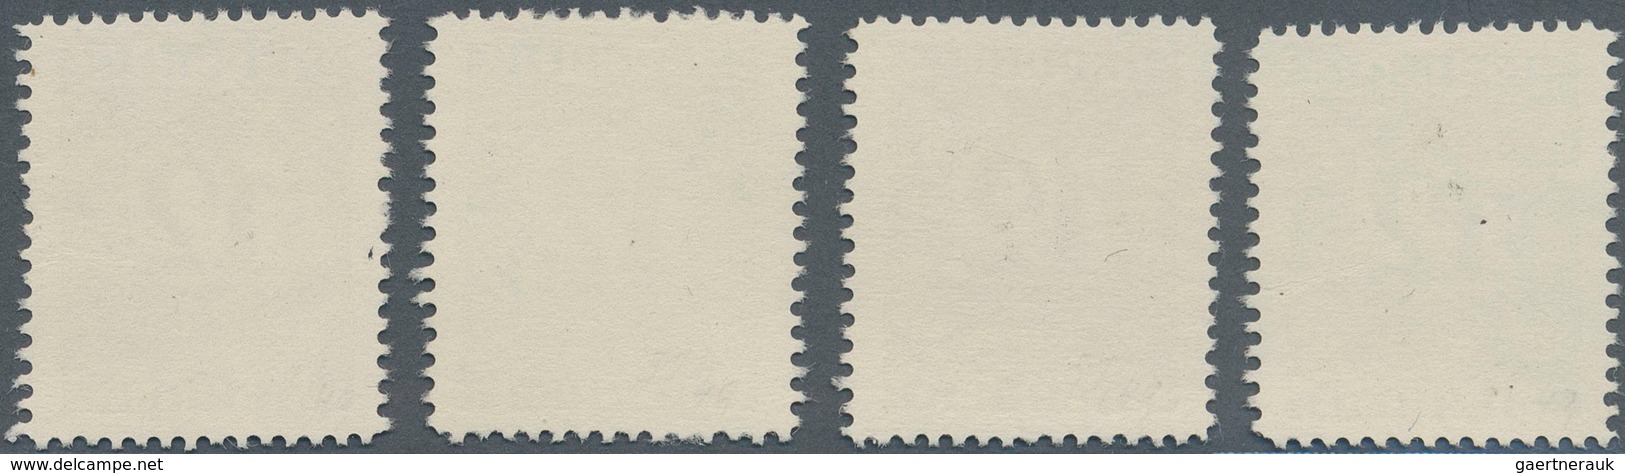 Österreich - Portomarken: 1949/1957, Ziffern, Vier Essays Einer Nicht Realisierten Zeichnung Mit Wer - Portomarken